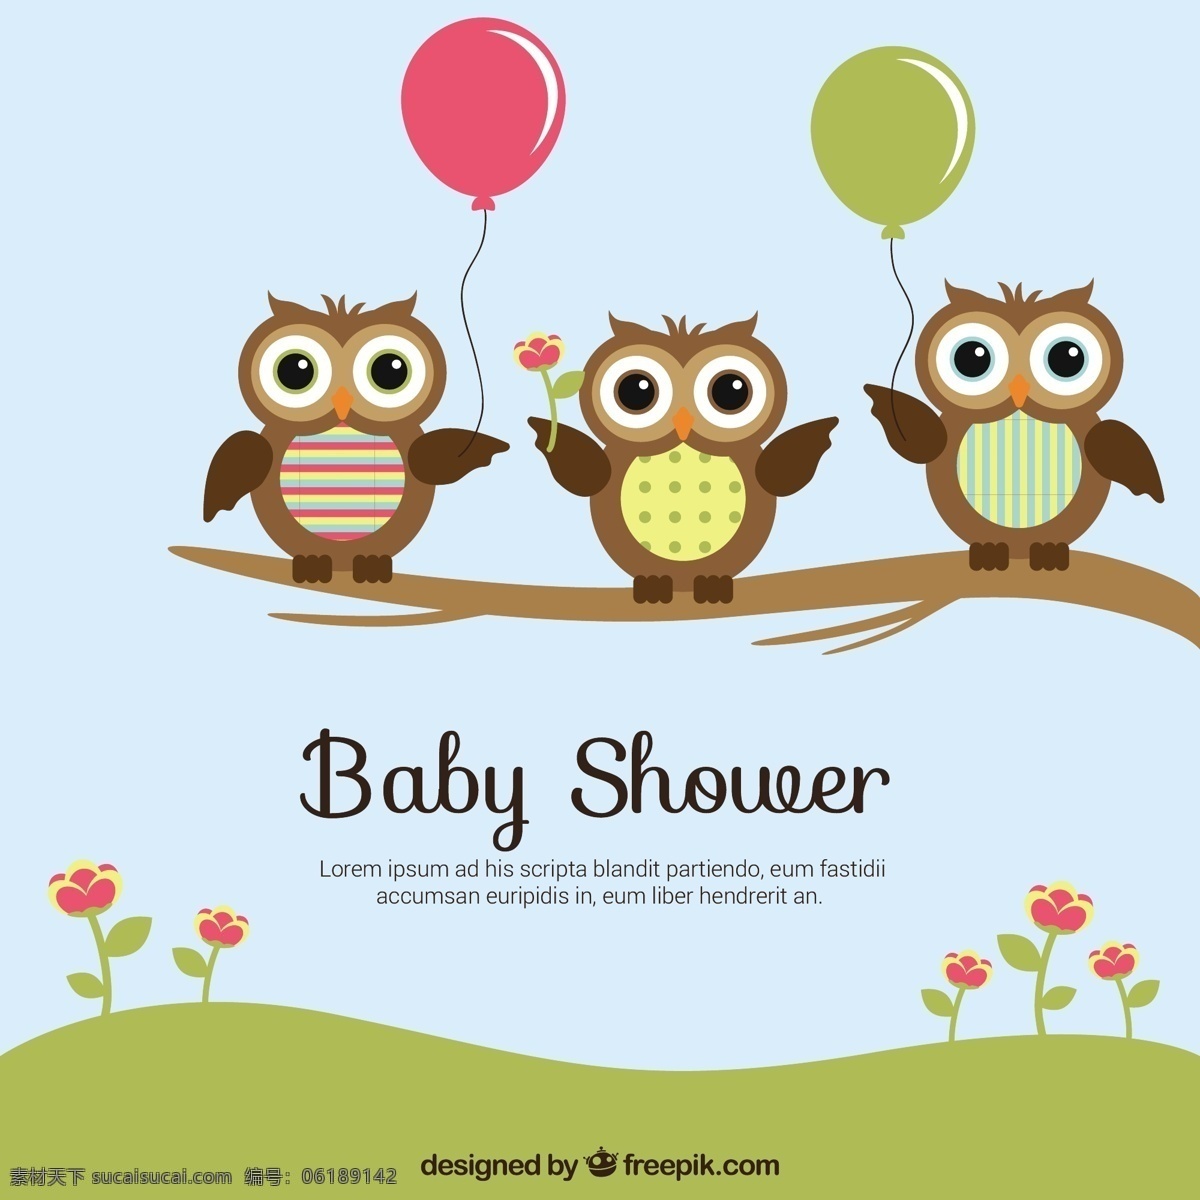 婴儿 洗澡 卡 模板 宝贝 沐浴 动物 猫头鹰 可爱 庆典 淋浴 庆祝 新生儿 出生